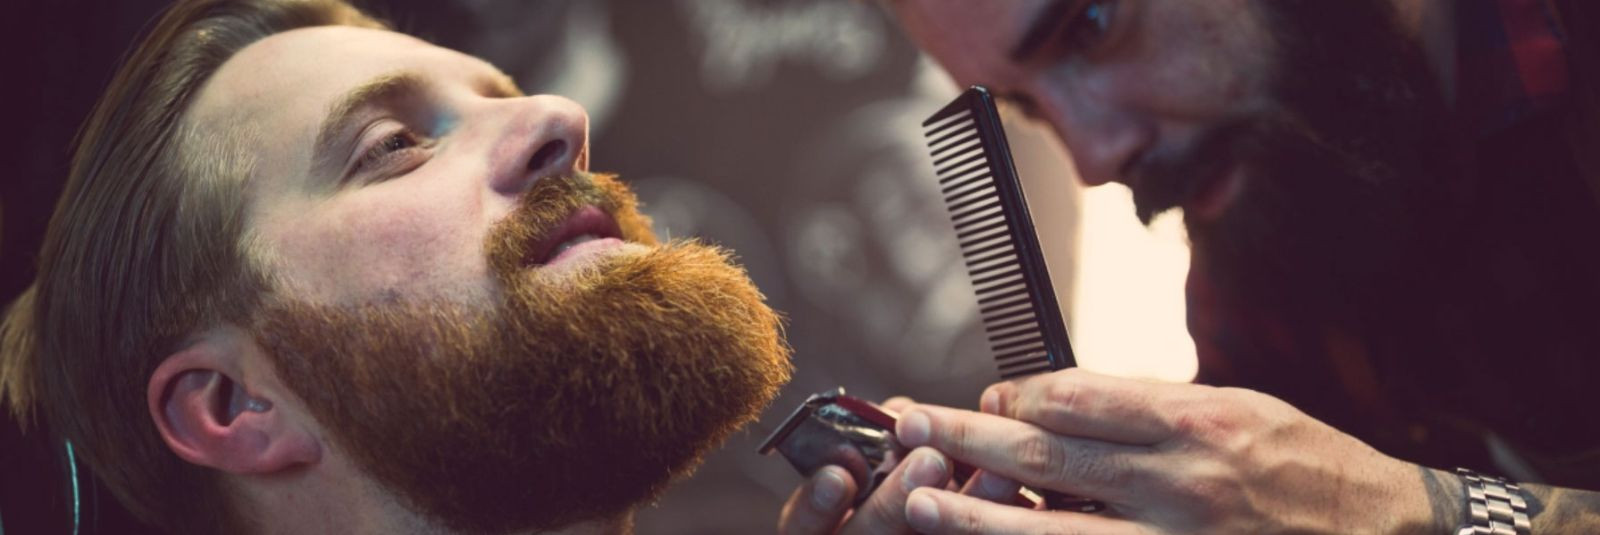 Kas olete kunagi mõelnud, miks teie habe erineb juuste värvusest või miks mõnedel inimestel on mitmevärvilised habemed? Sukeldume salapärasesse maailma, kus gen